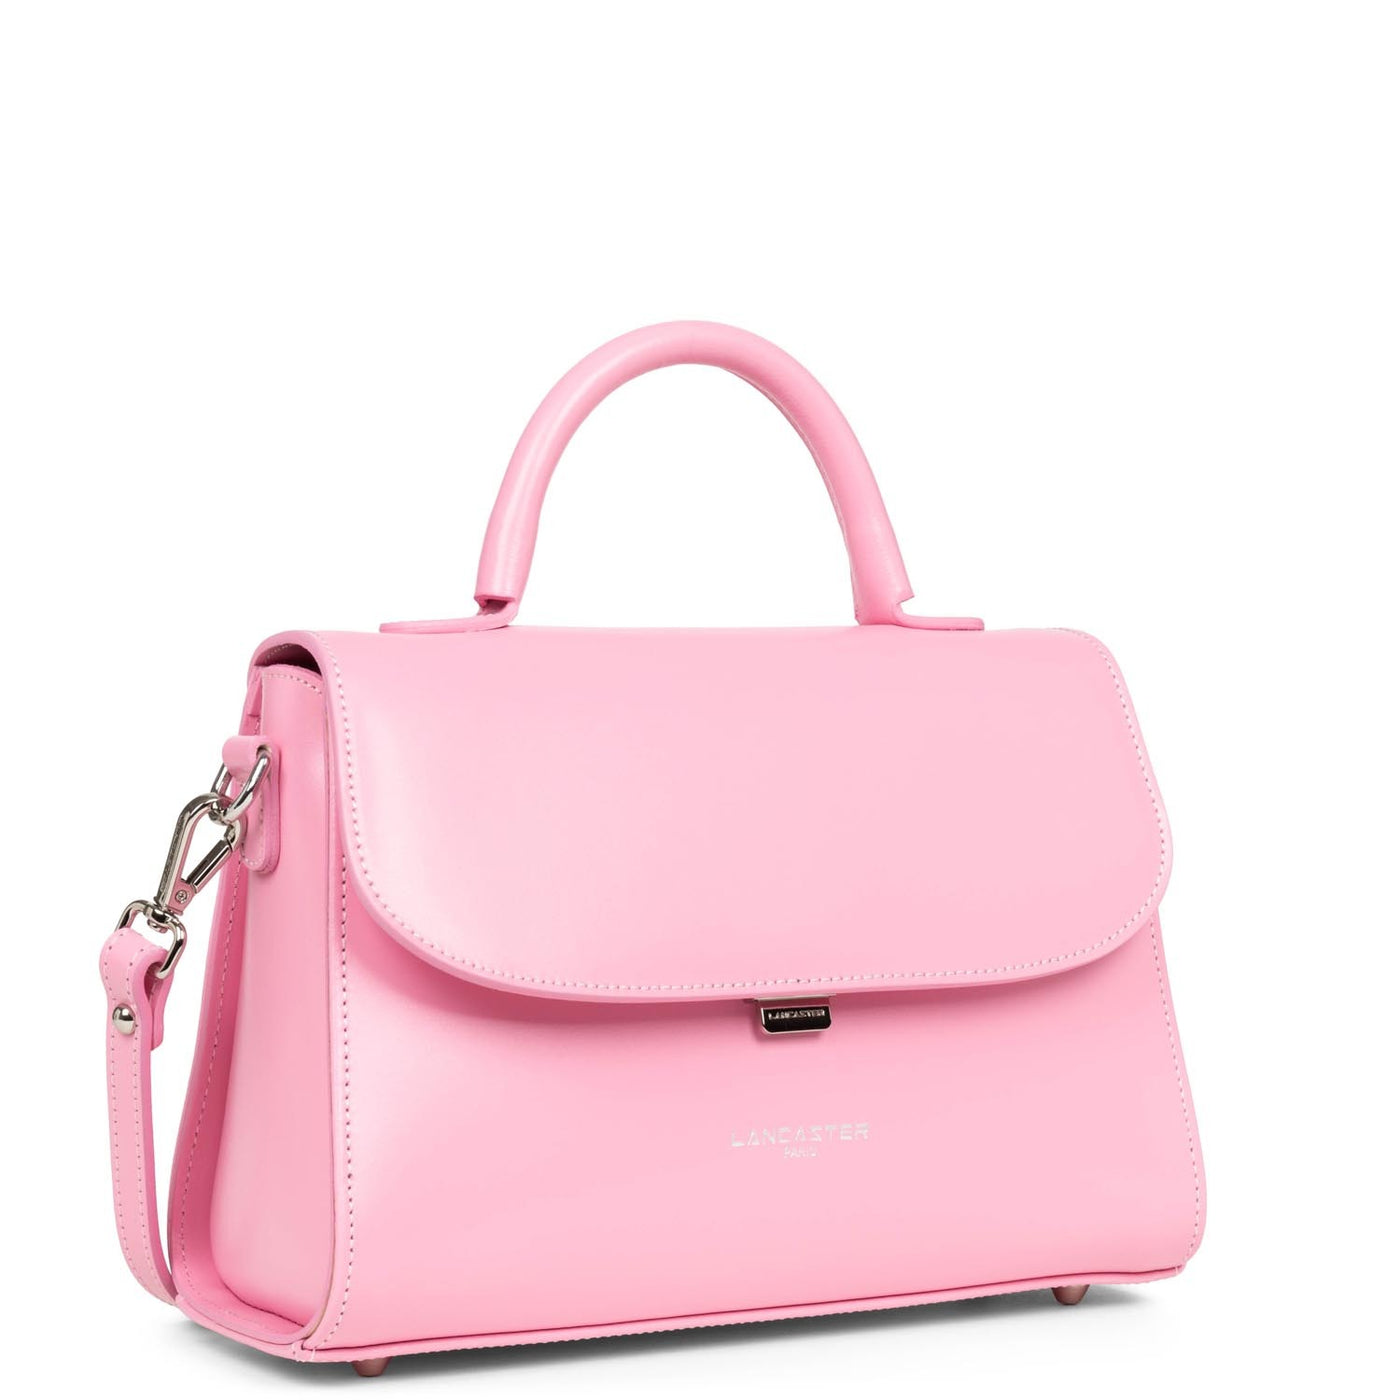 m handbag - suave even #couleur_rose